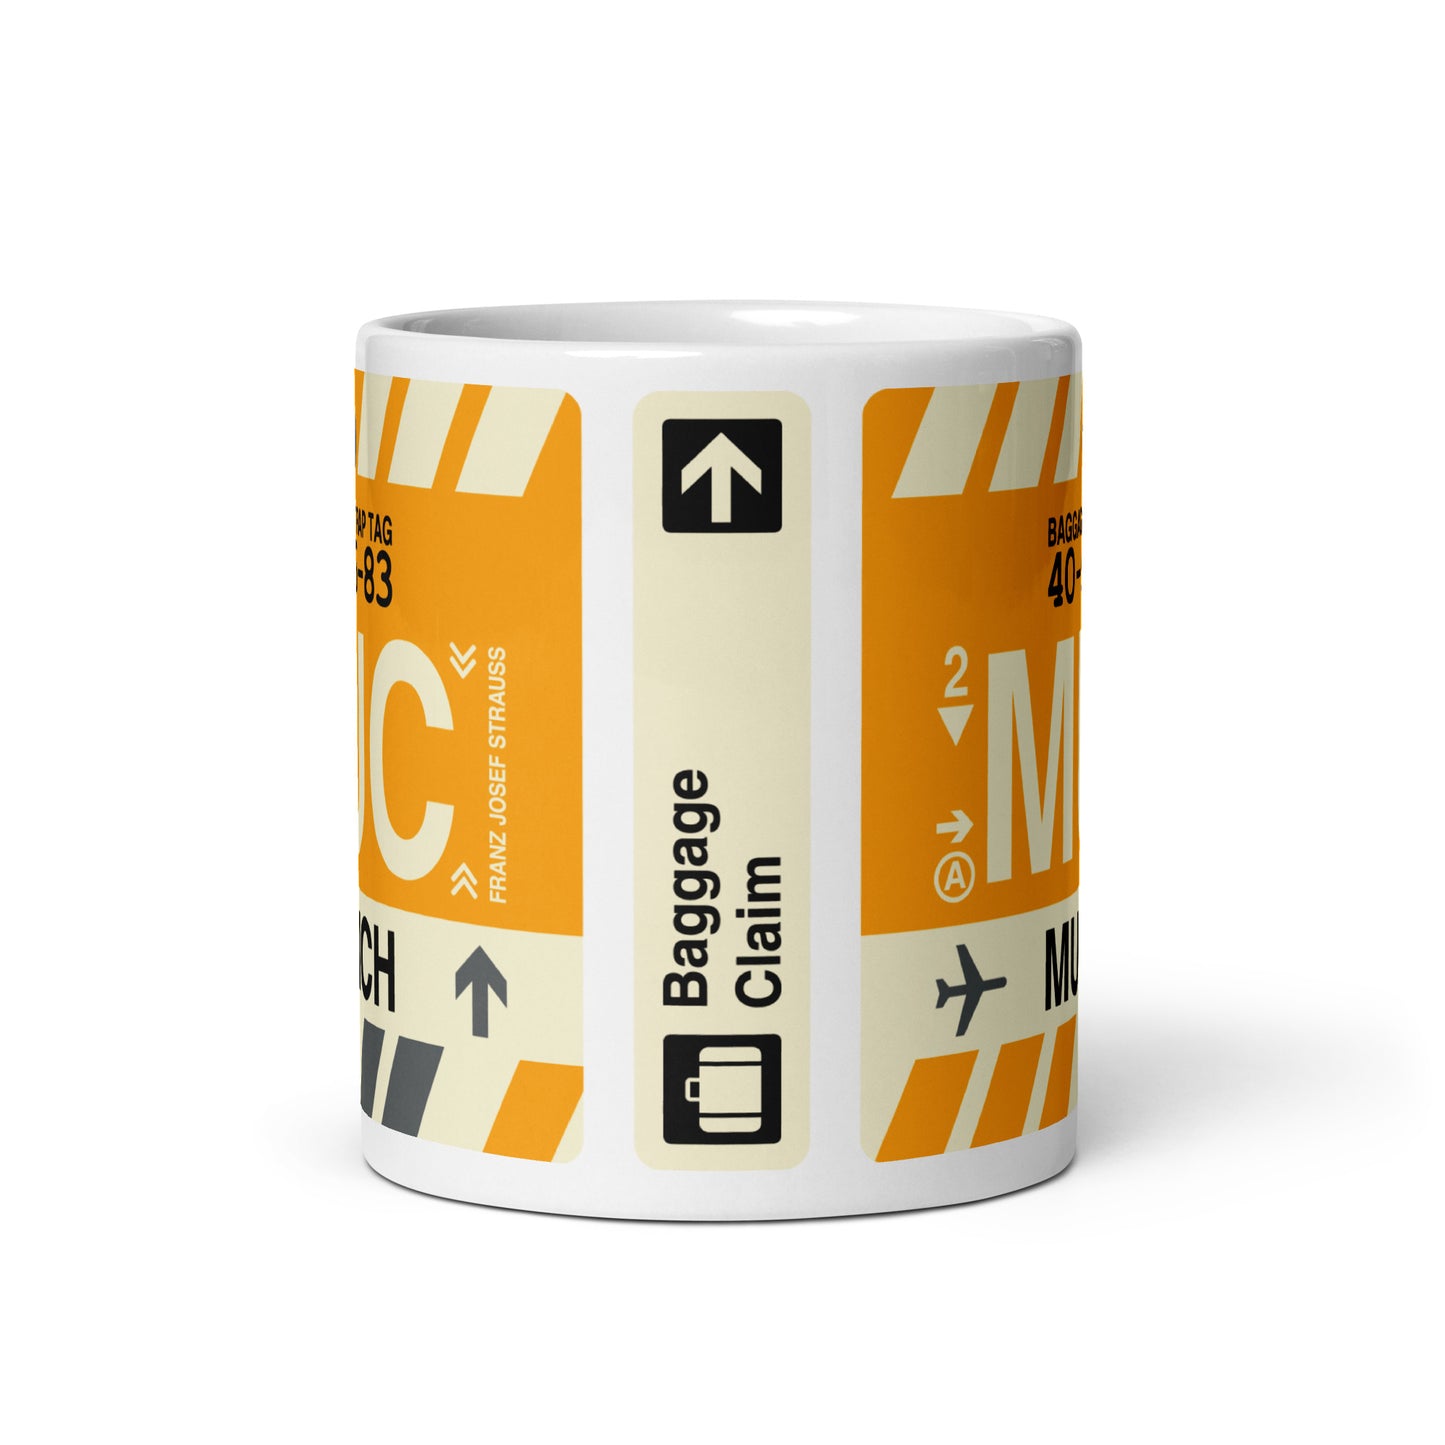 Travel-Themed Coffee Mug • MUC Munich • YHM Designs - Image 02